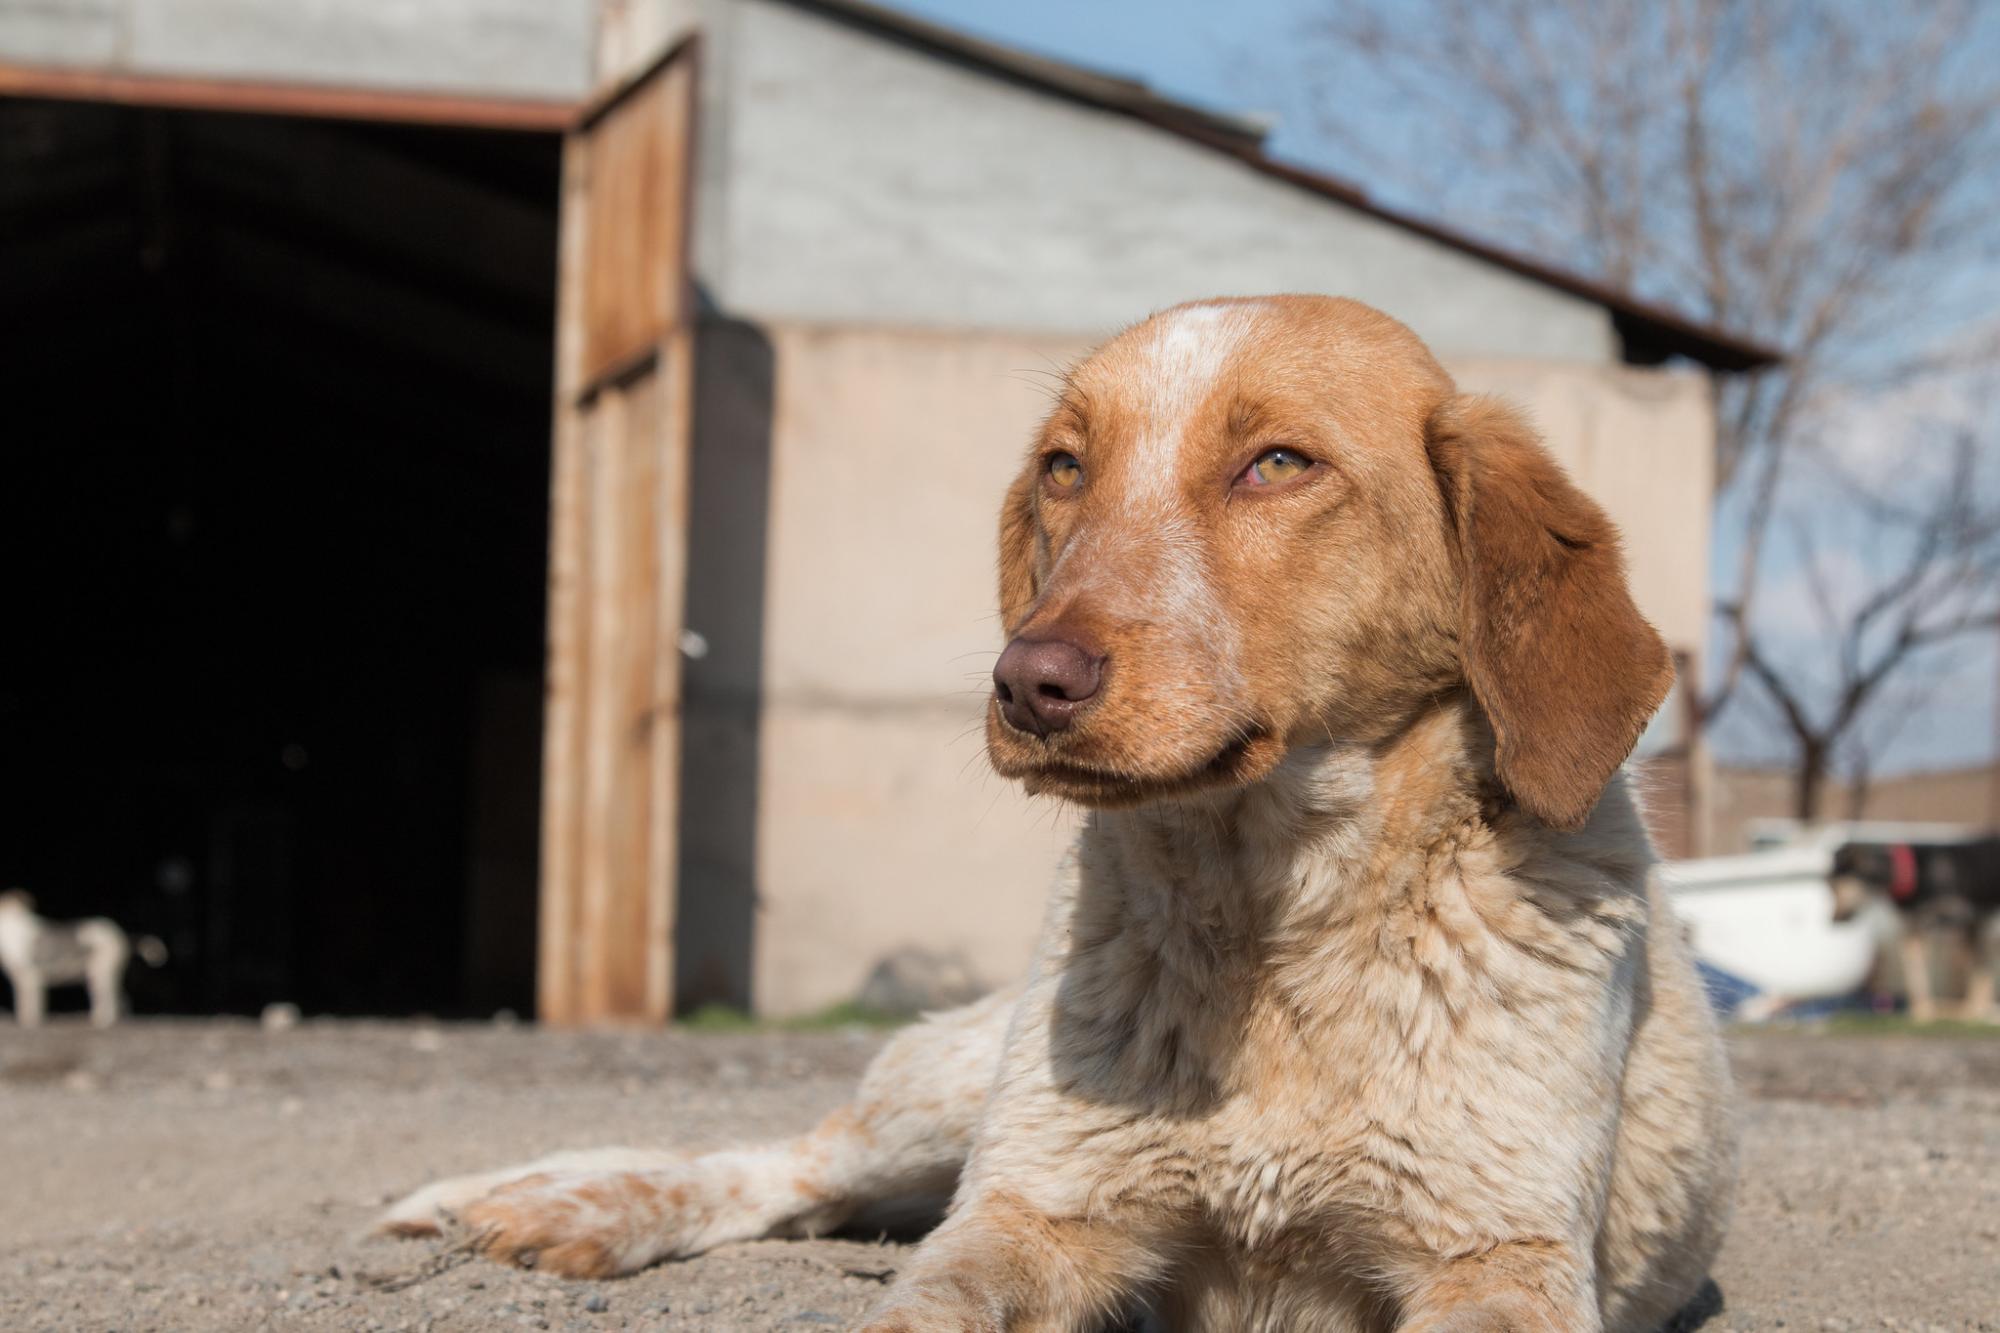 Դիլիջան ազգային պարկի տնօրենին մեղադրանք է առաջադրվել՝ շանը դաժանաբար սպանելու համար